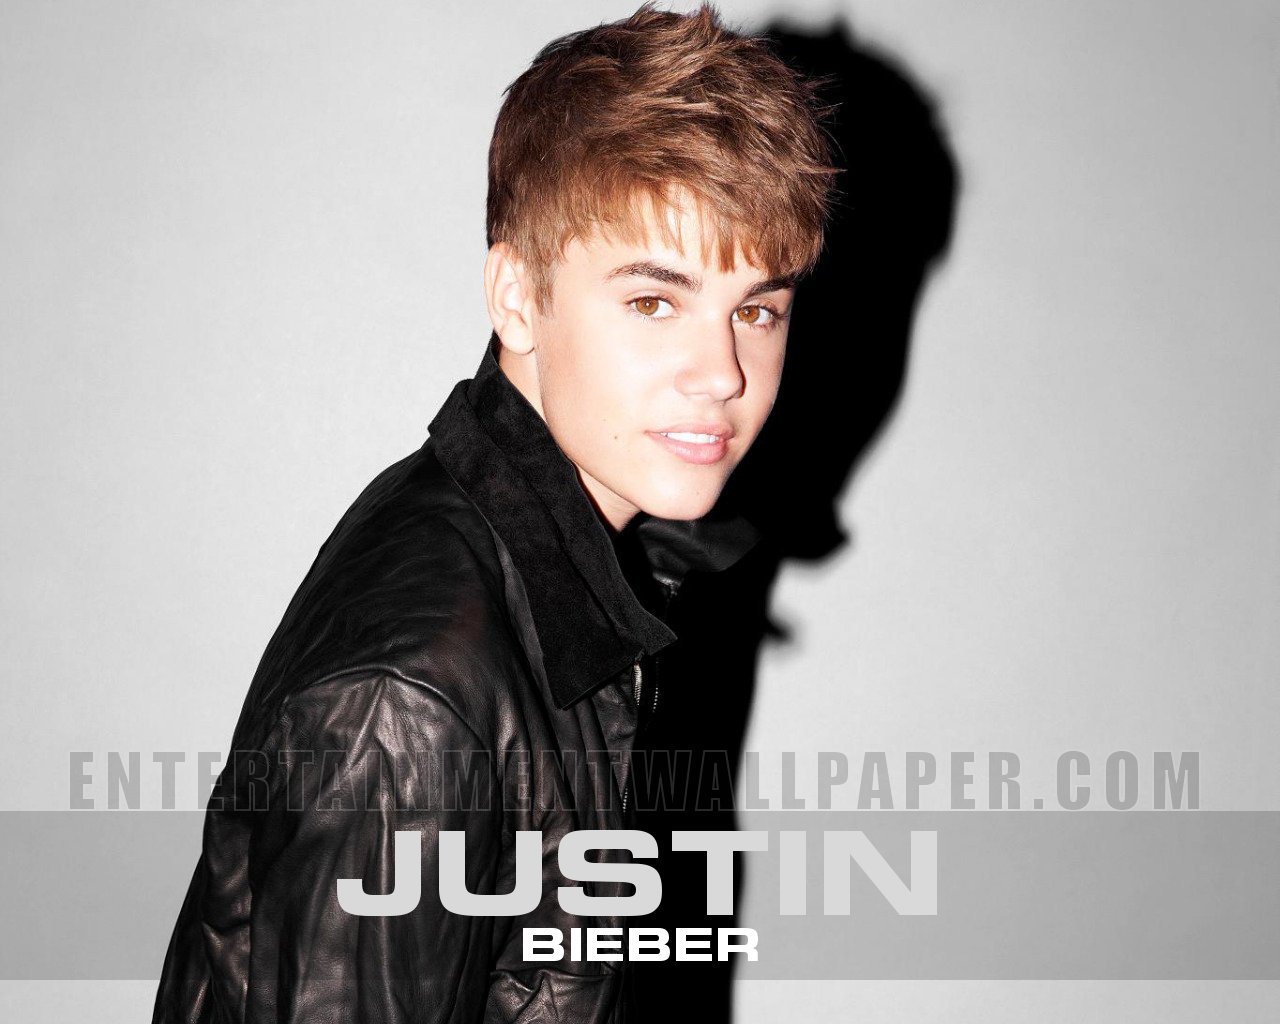 Description New Justin Bieber Wallpaper is a hi res Wallpaper for pc